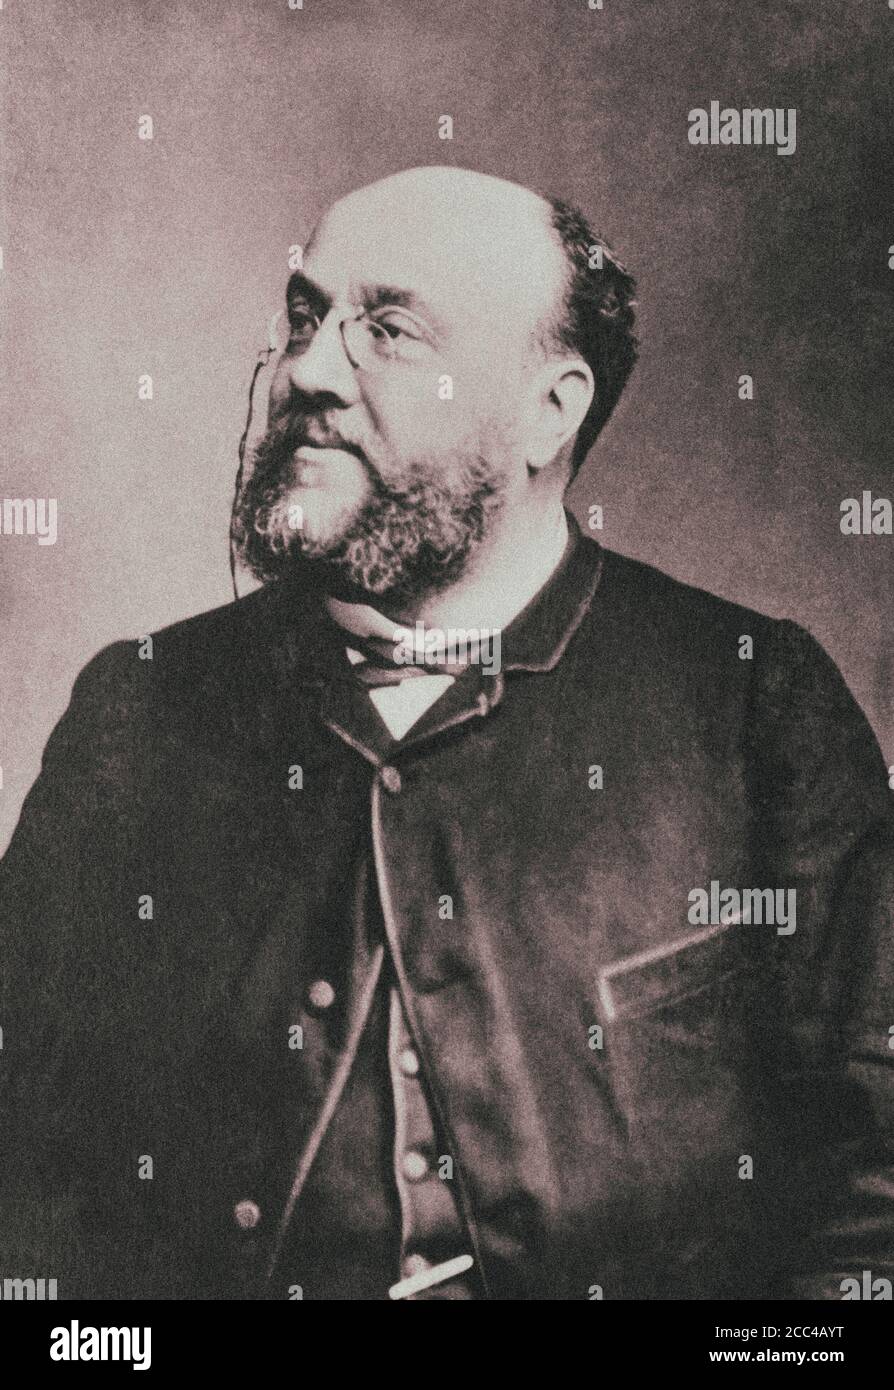 Charles Lamoureux (1834-1899), chef d'orchestre et violoniste français, fondateur de la Société des nouveaux concerts, qui devient les concerts de Lamoureux. Banque D'Images